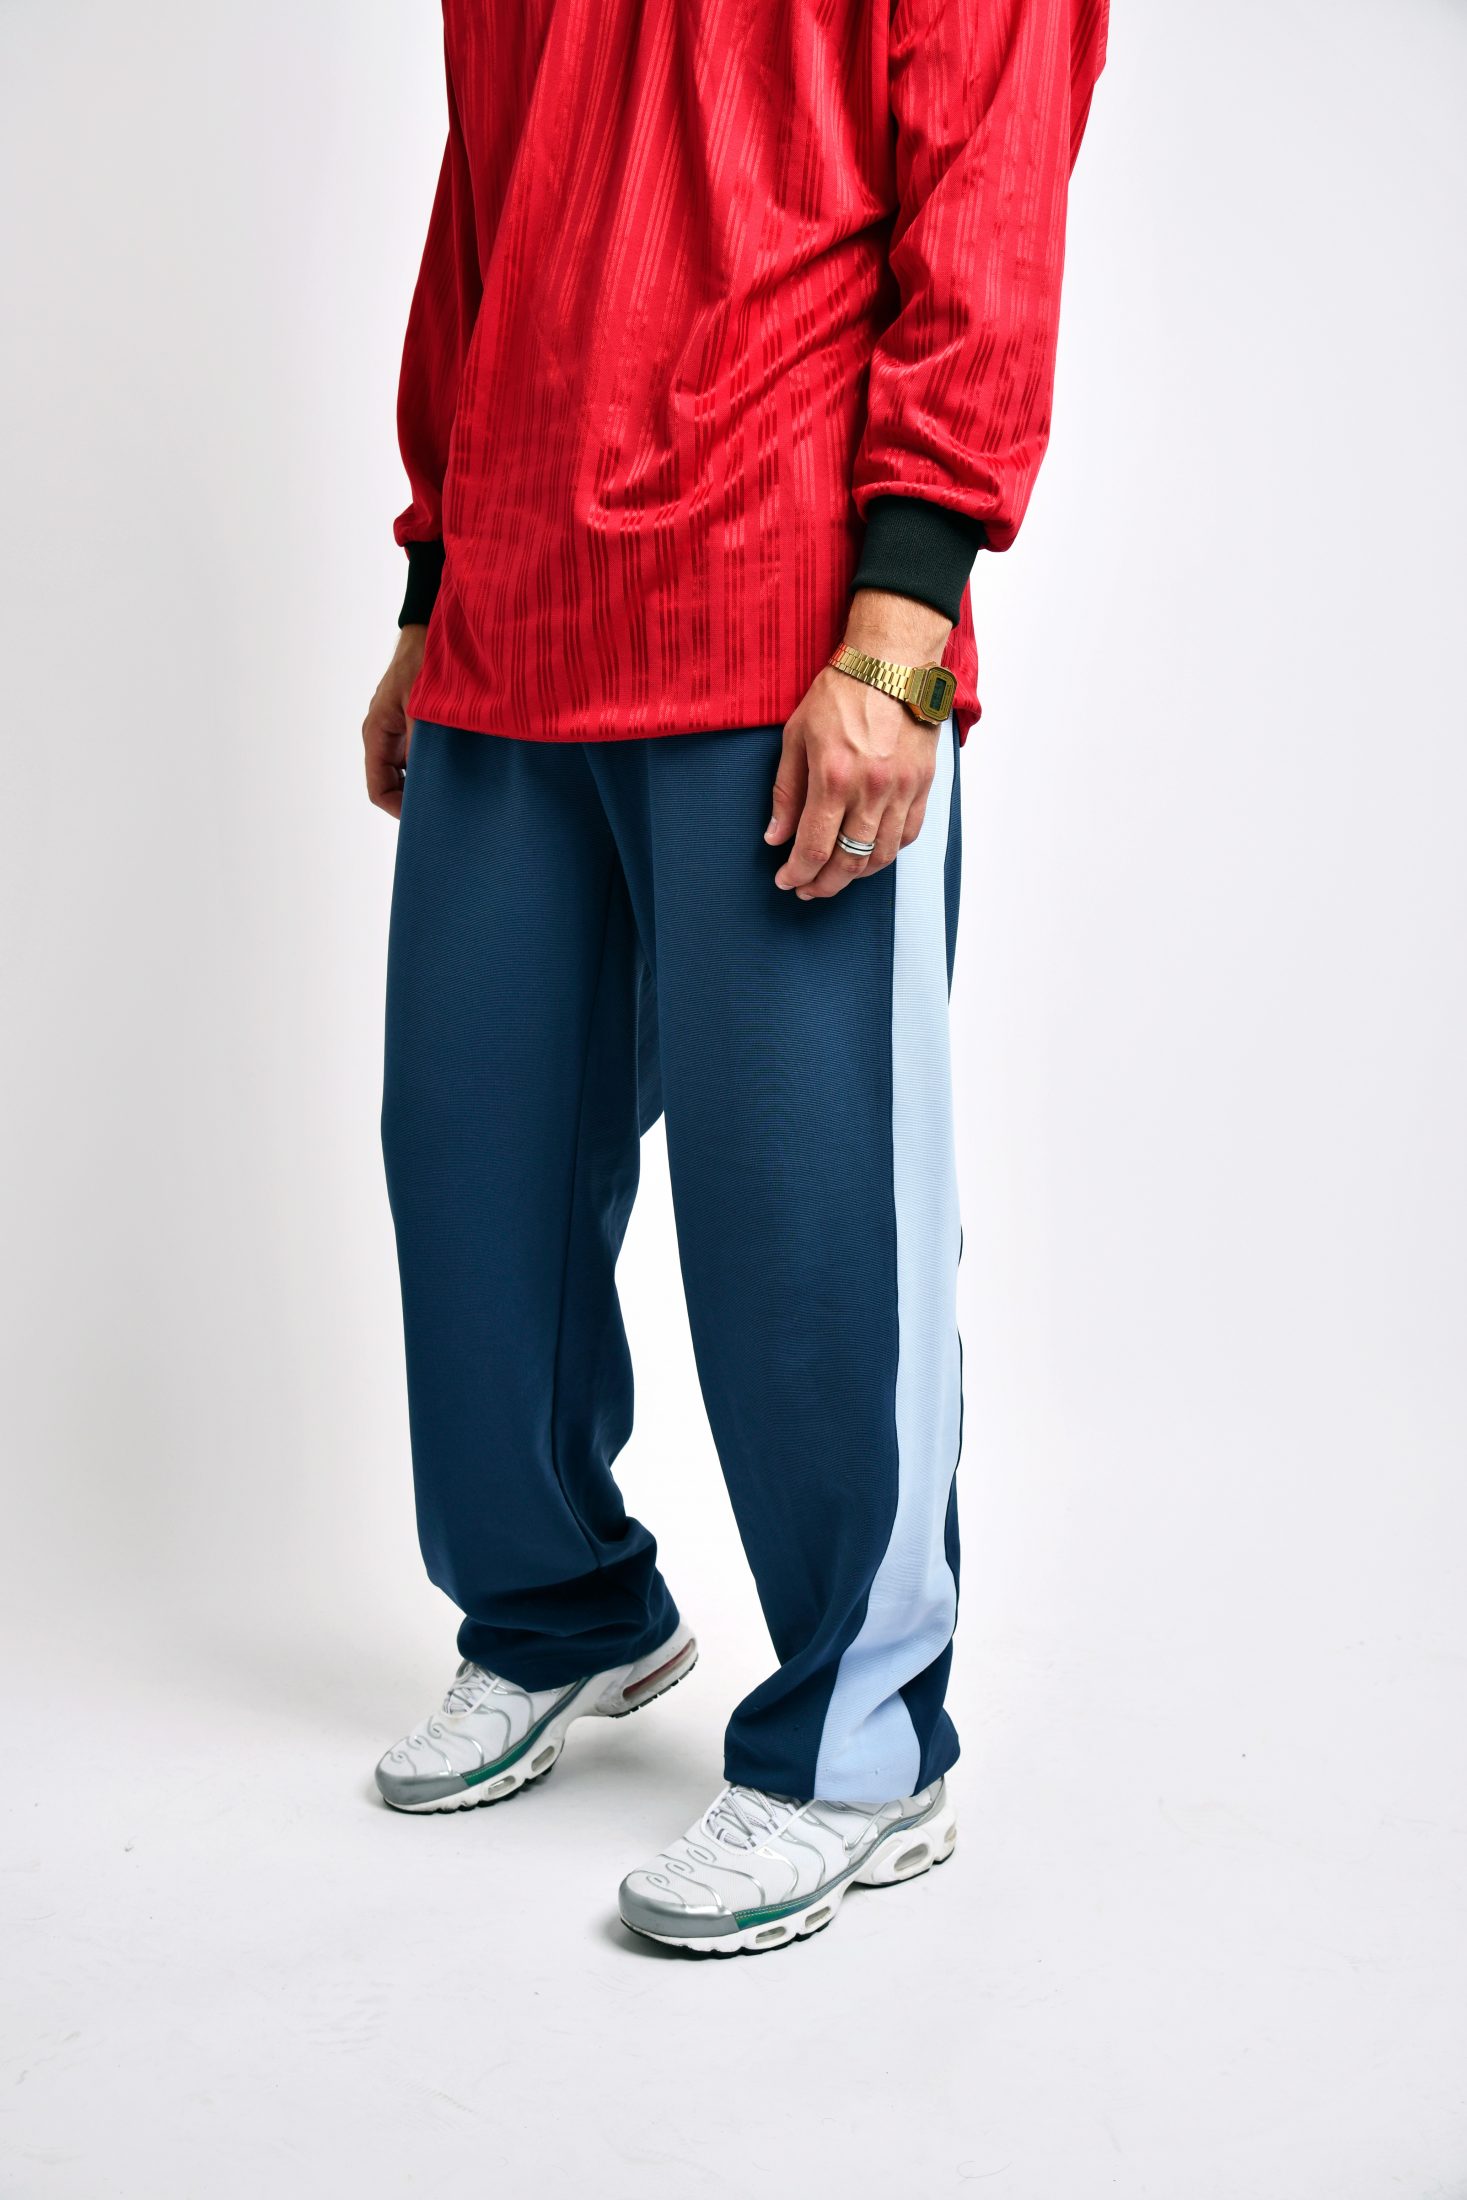 KAPPA vintage mens pants | Vintage clothes online for men